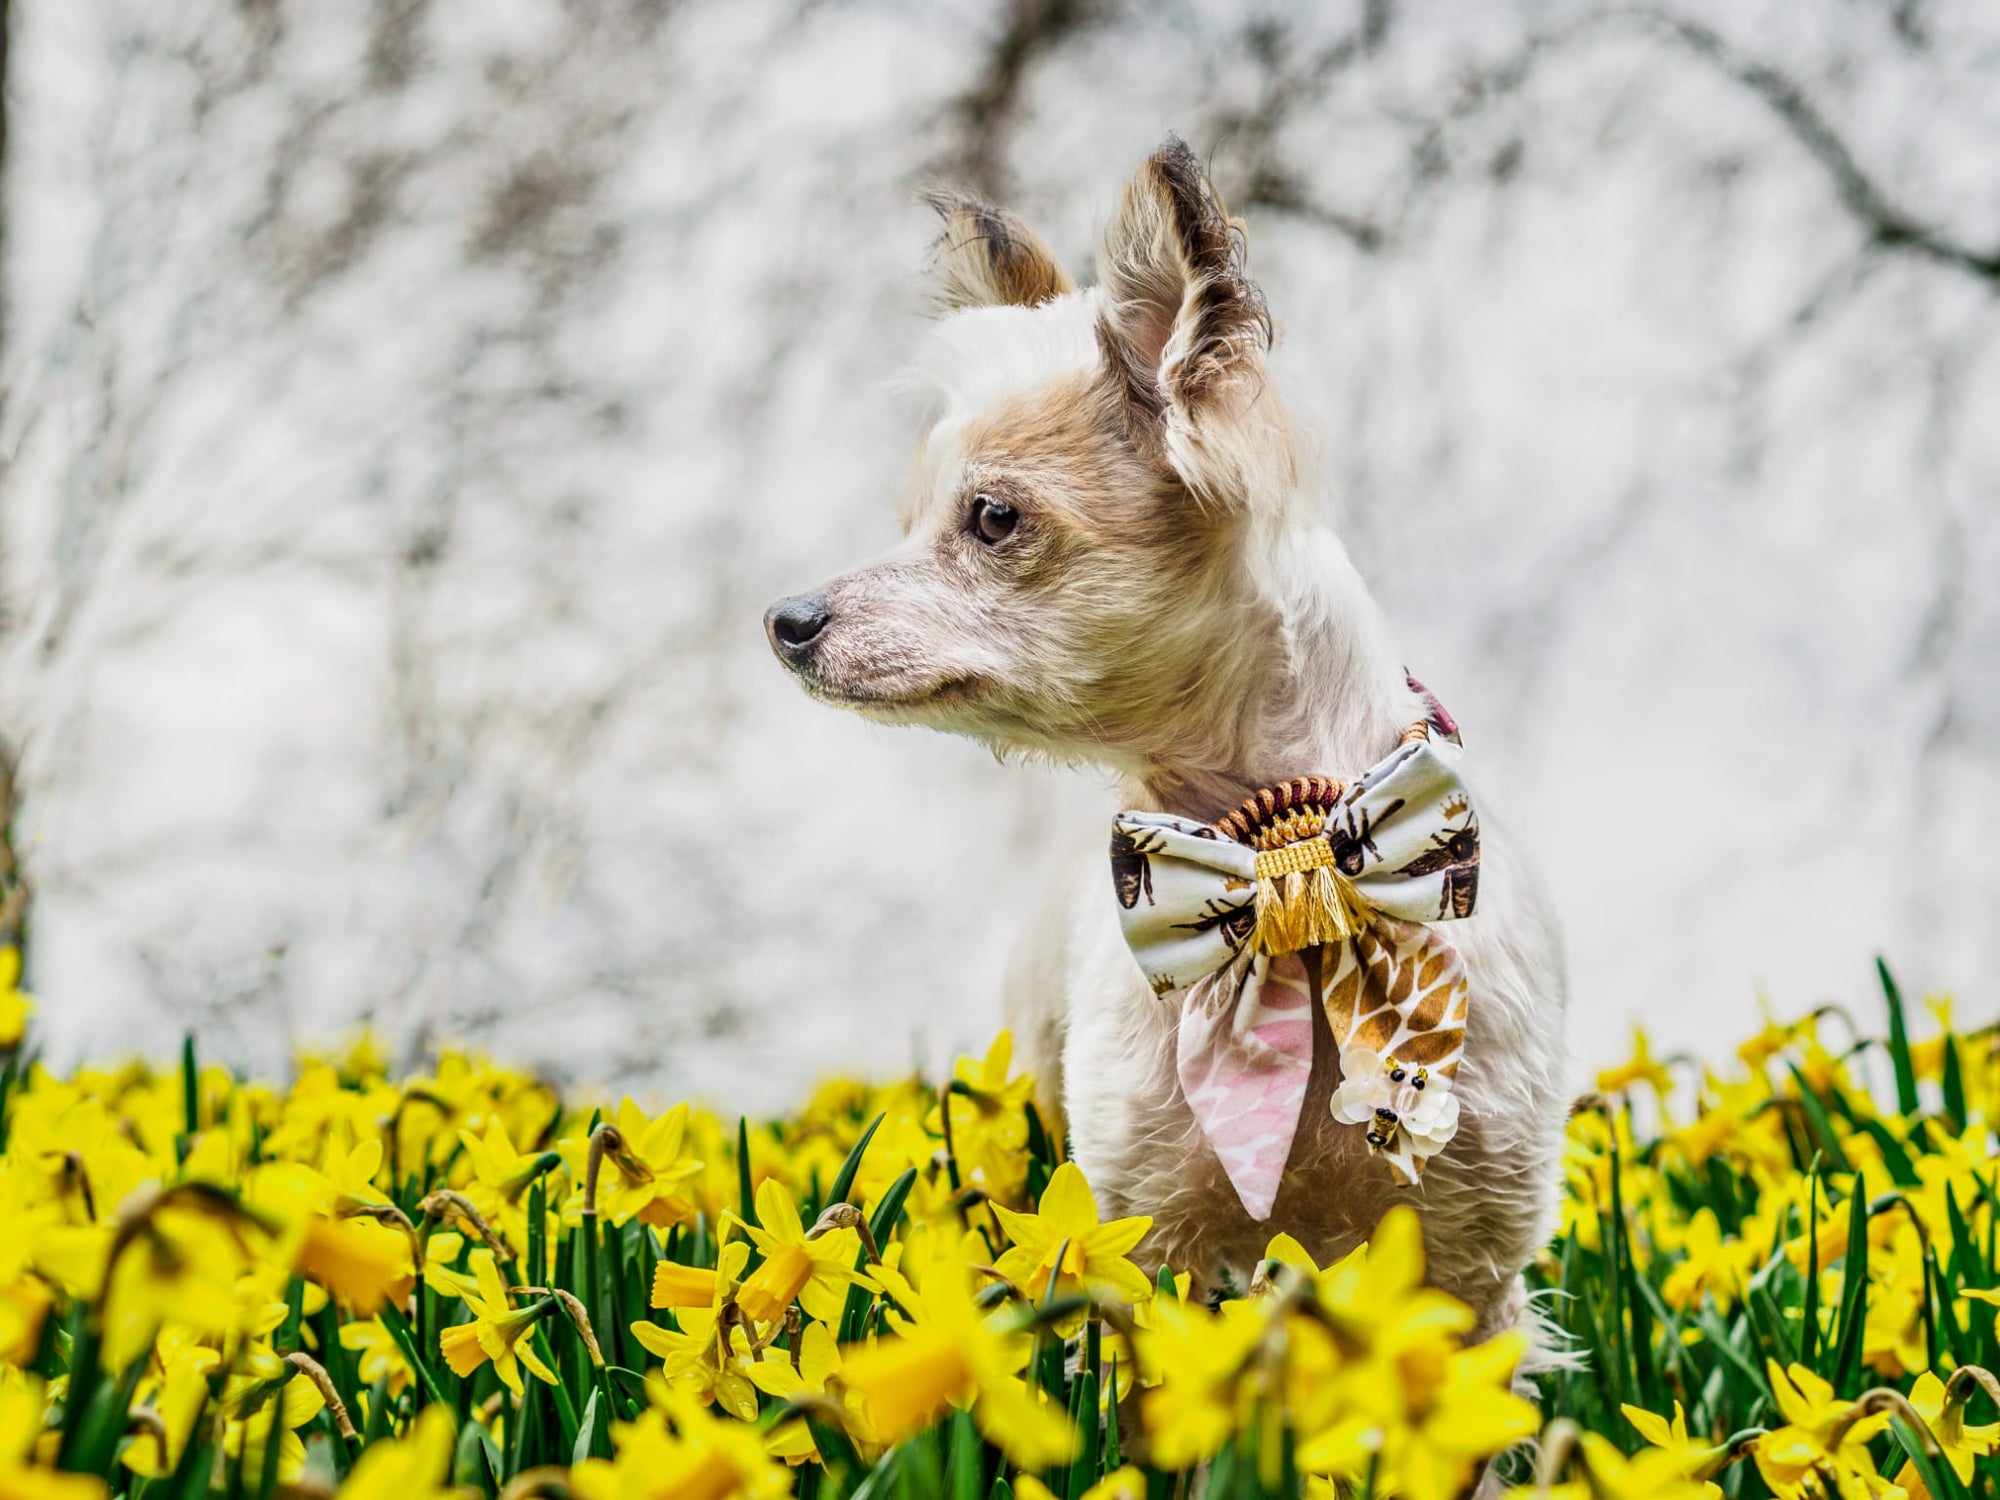 Hundemodel trägt weiße Hundeschleife mit Bienen und floralem Muster beim Fotoshooting in Blumenwiese